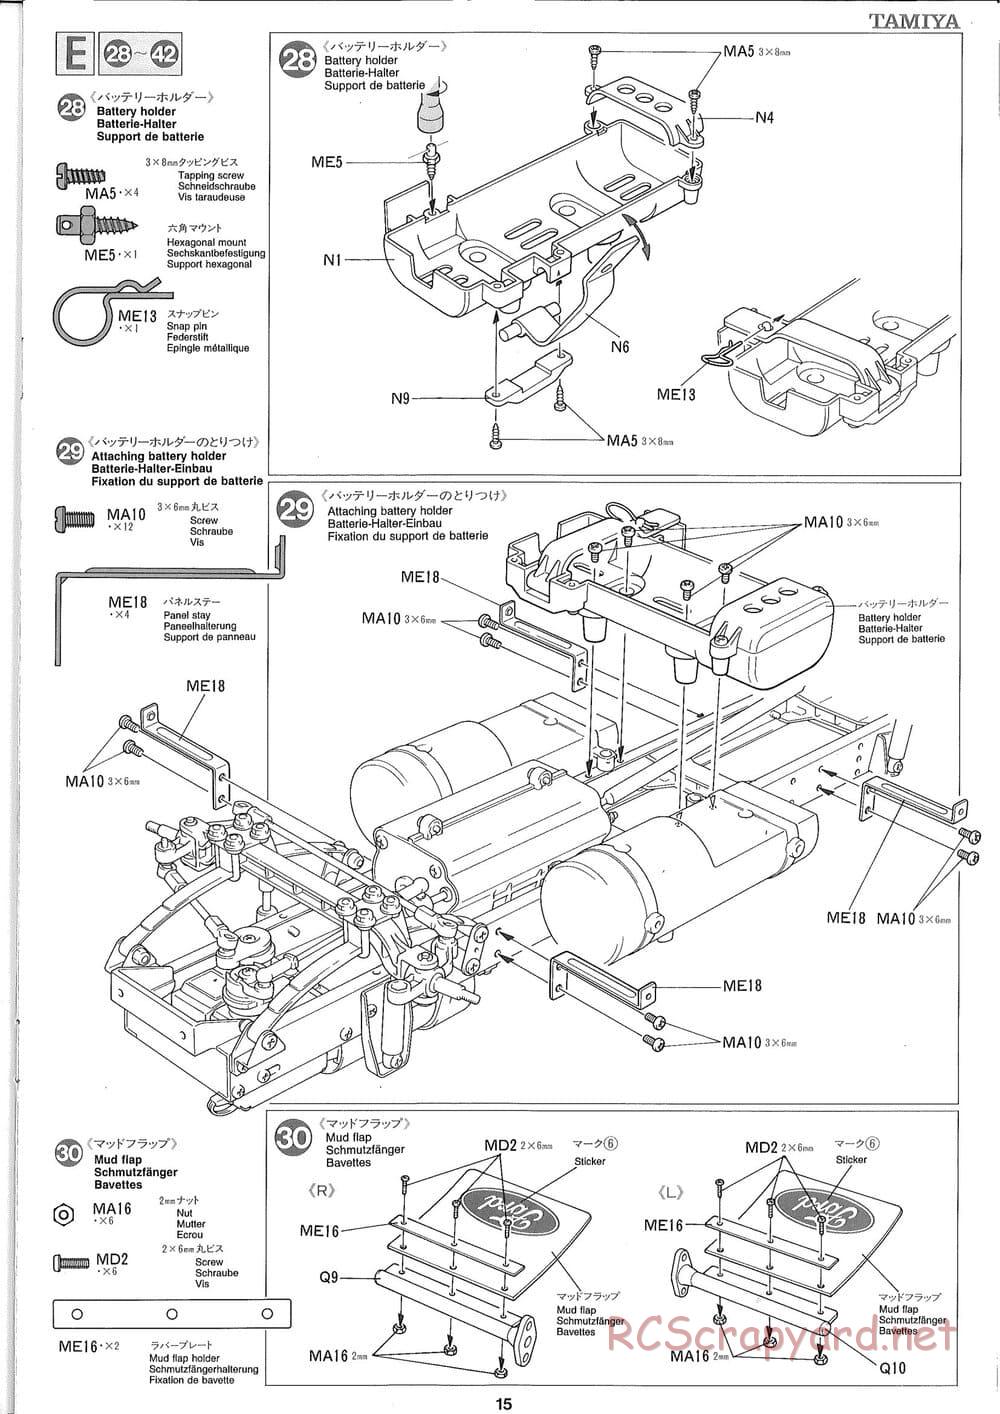 Tamiya - Ford Aeromax - Manual - Page 15